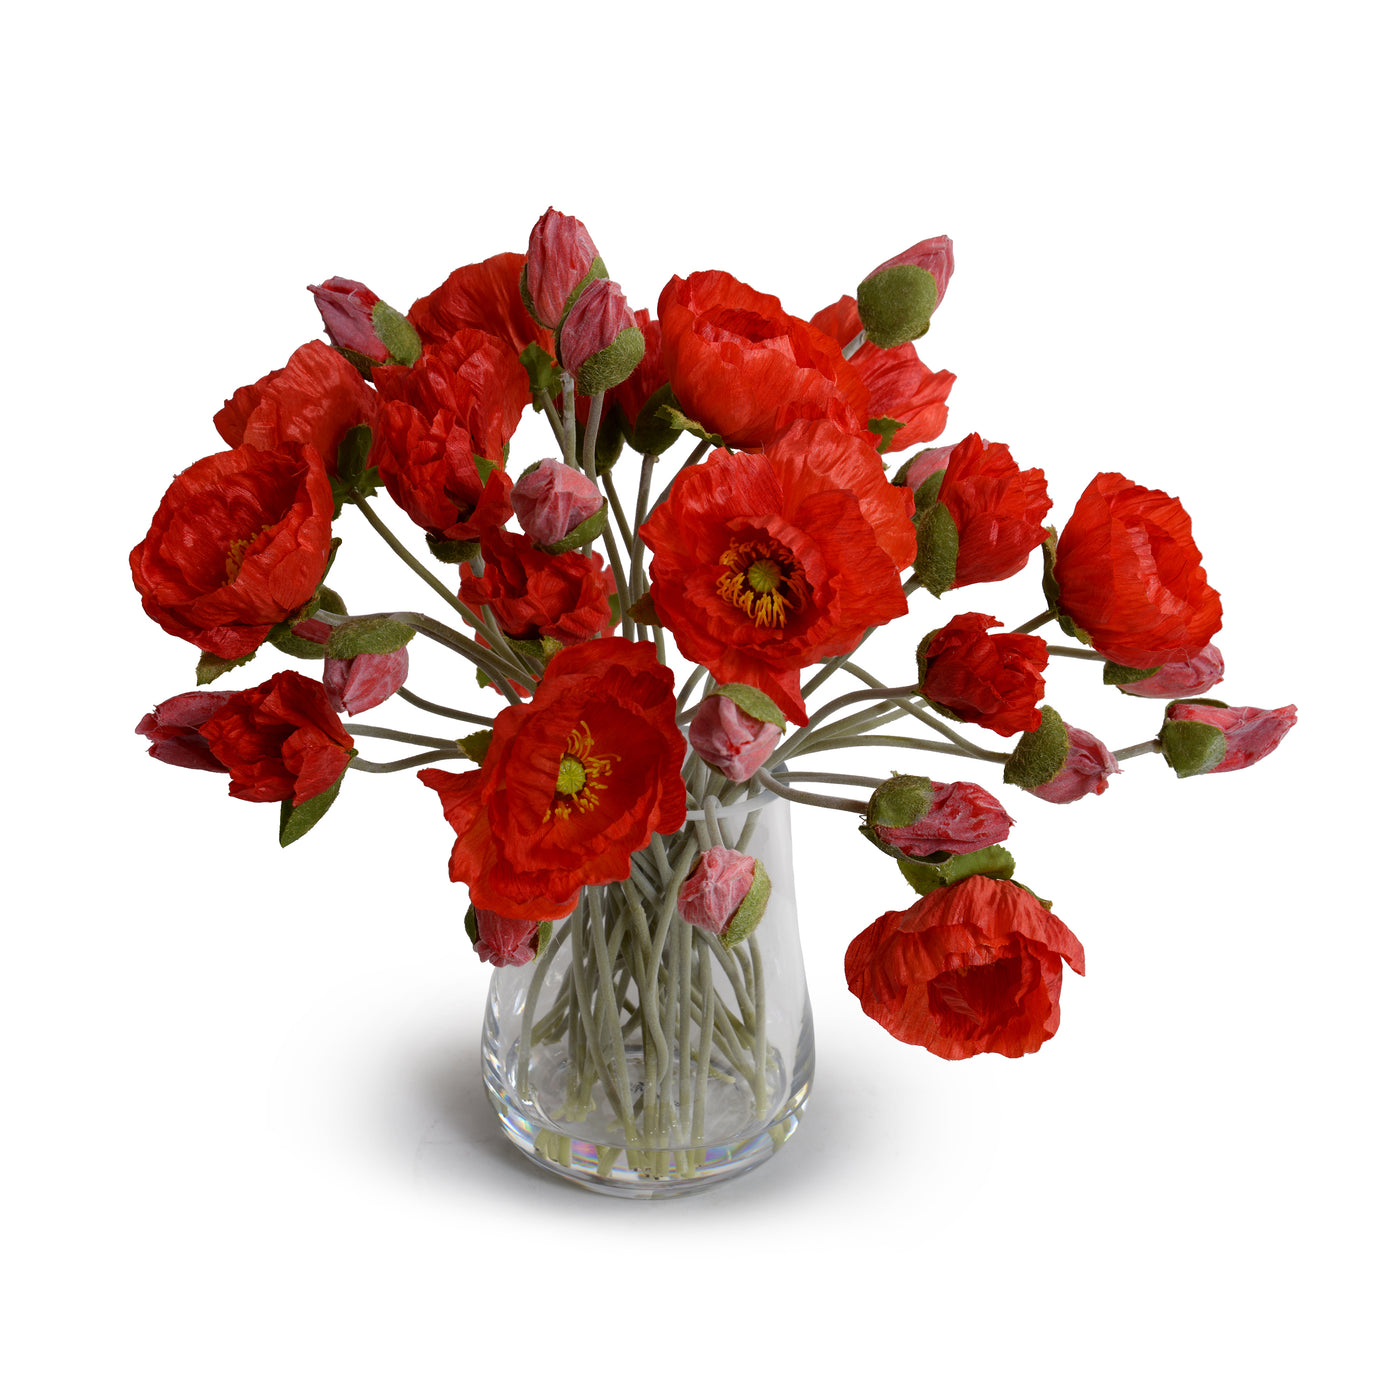 Poppy Bouquet in Glass Vase - Orange-red